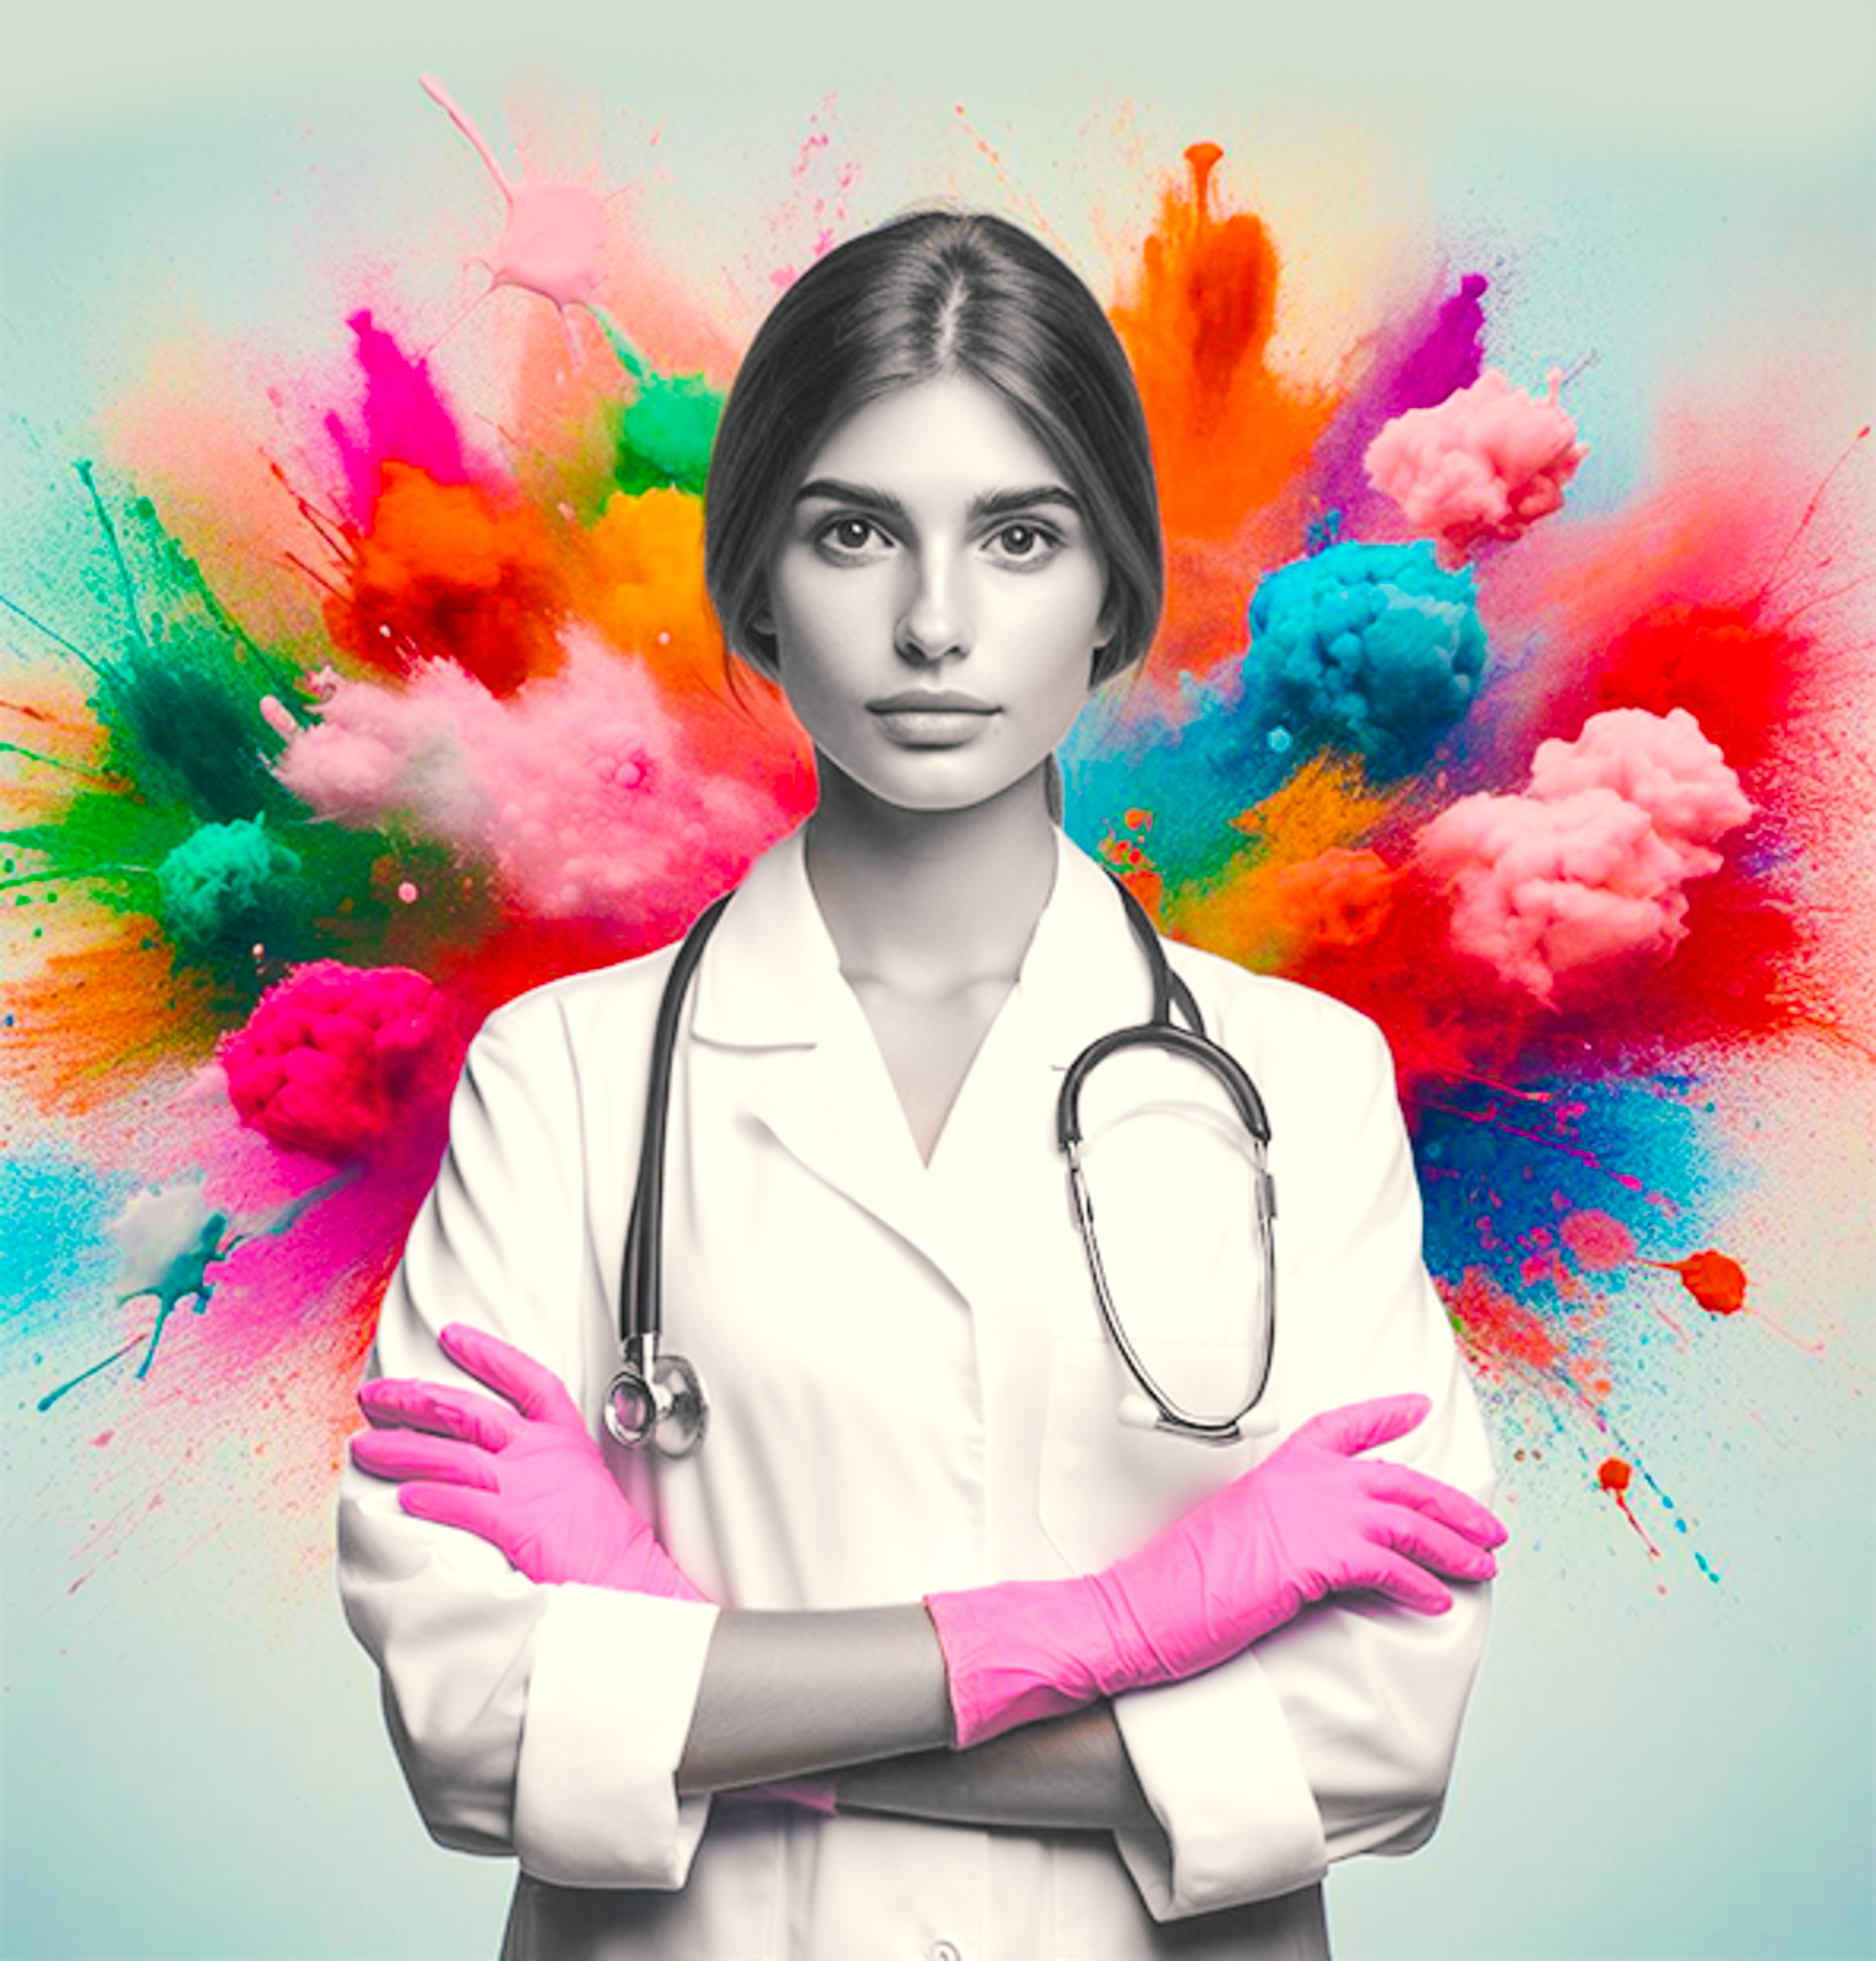 Vliv barev rukavic na vnímání péče u pacientů: Odborný pohled